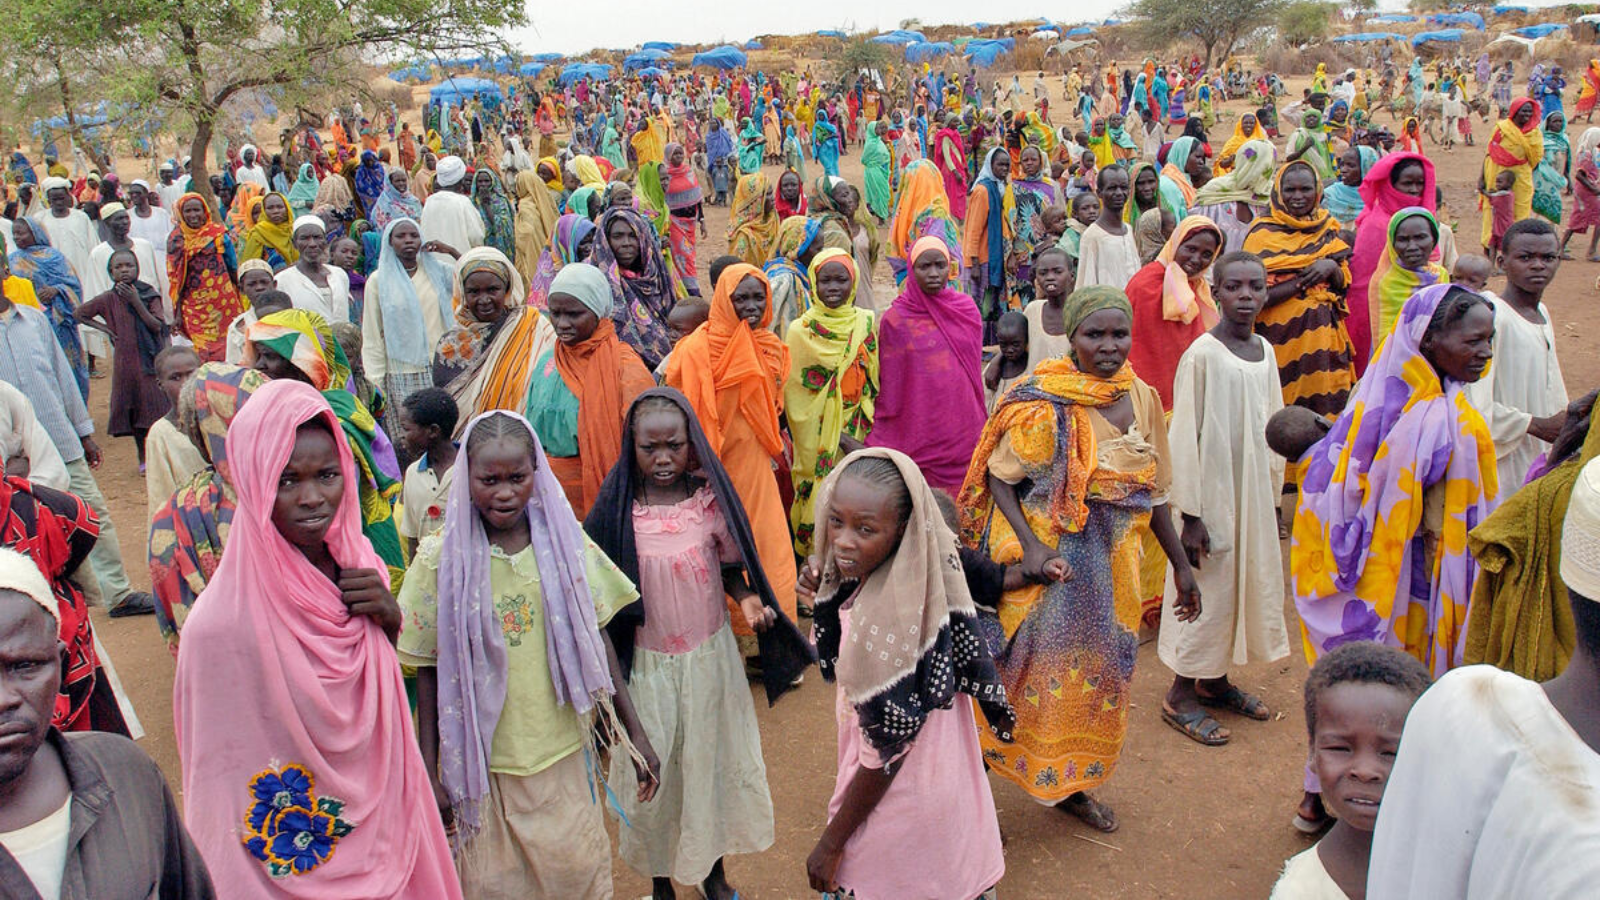 Суданцы арабы Судана. Судан население. Жители Южного Судана. Традиции народов Судана.